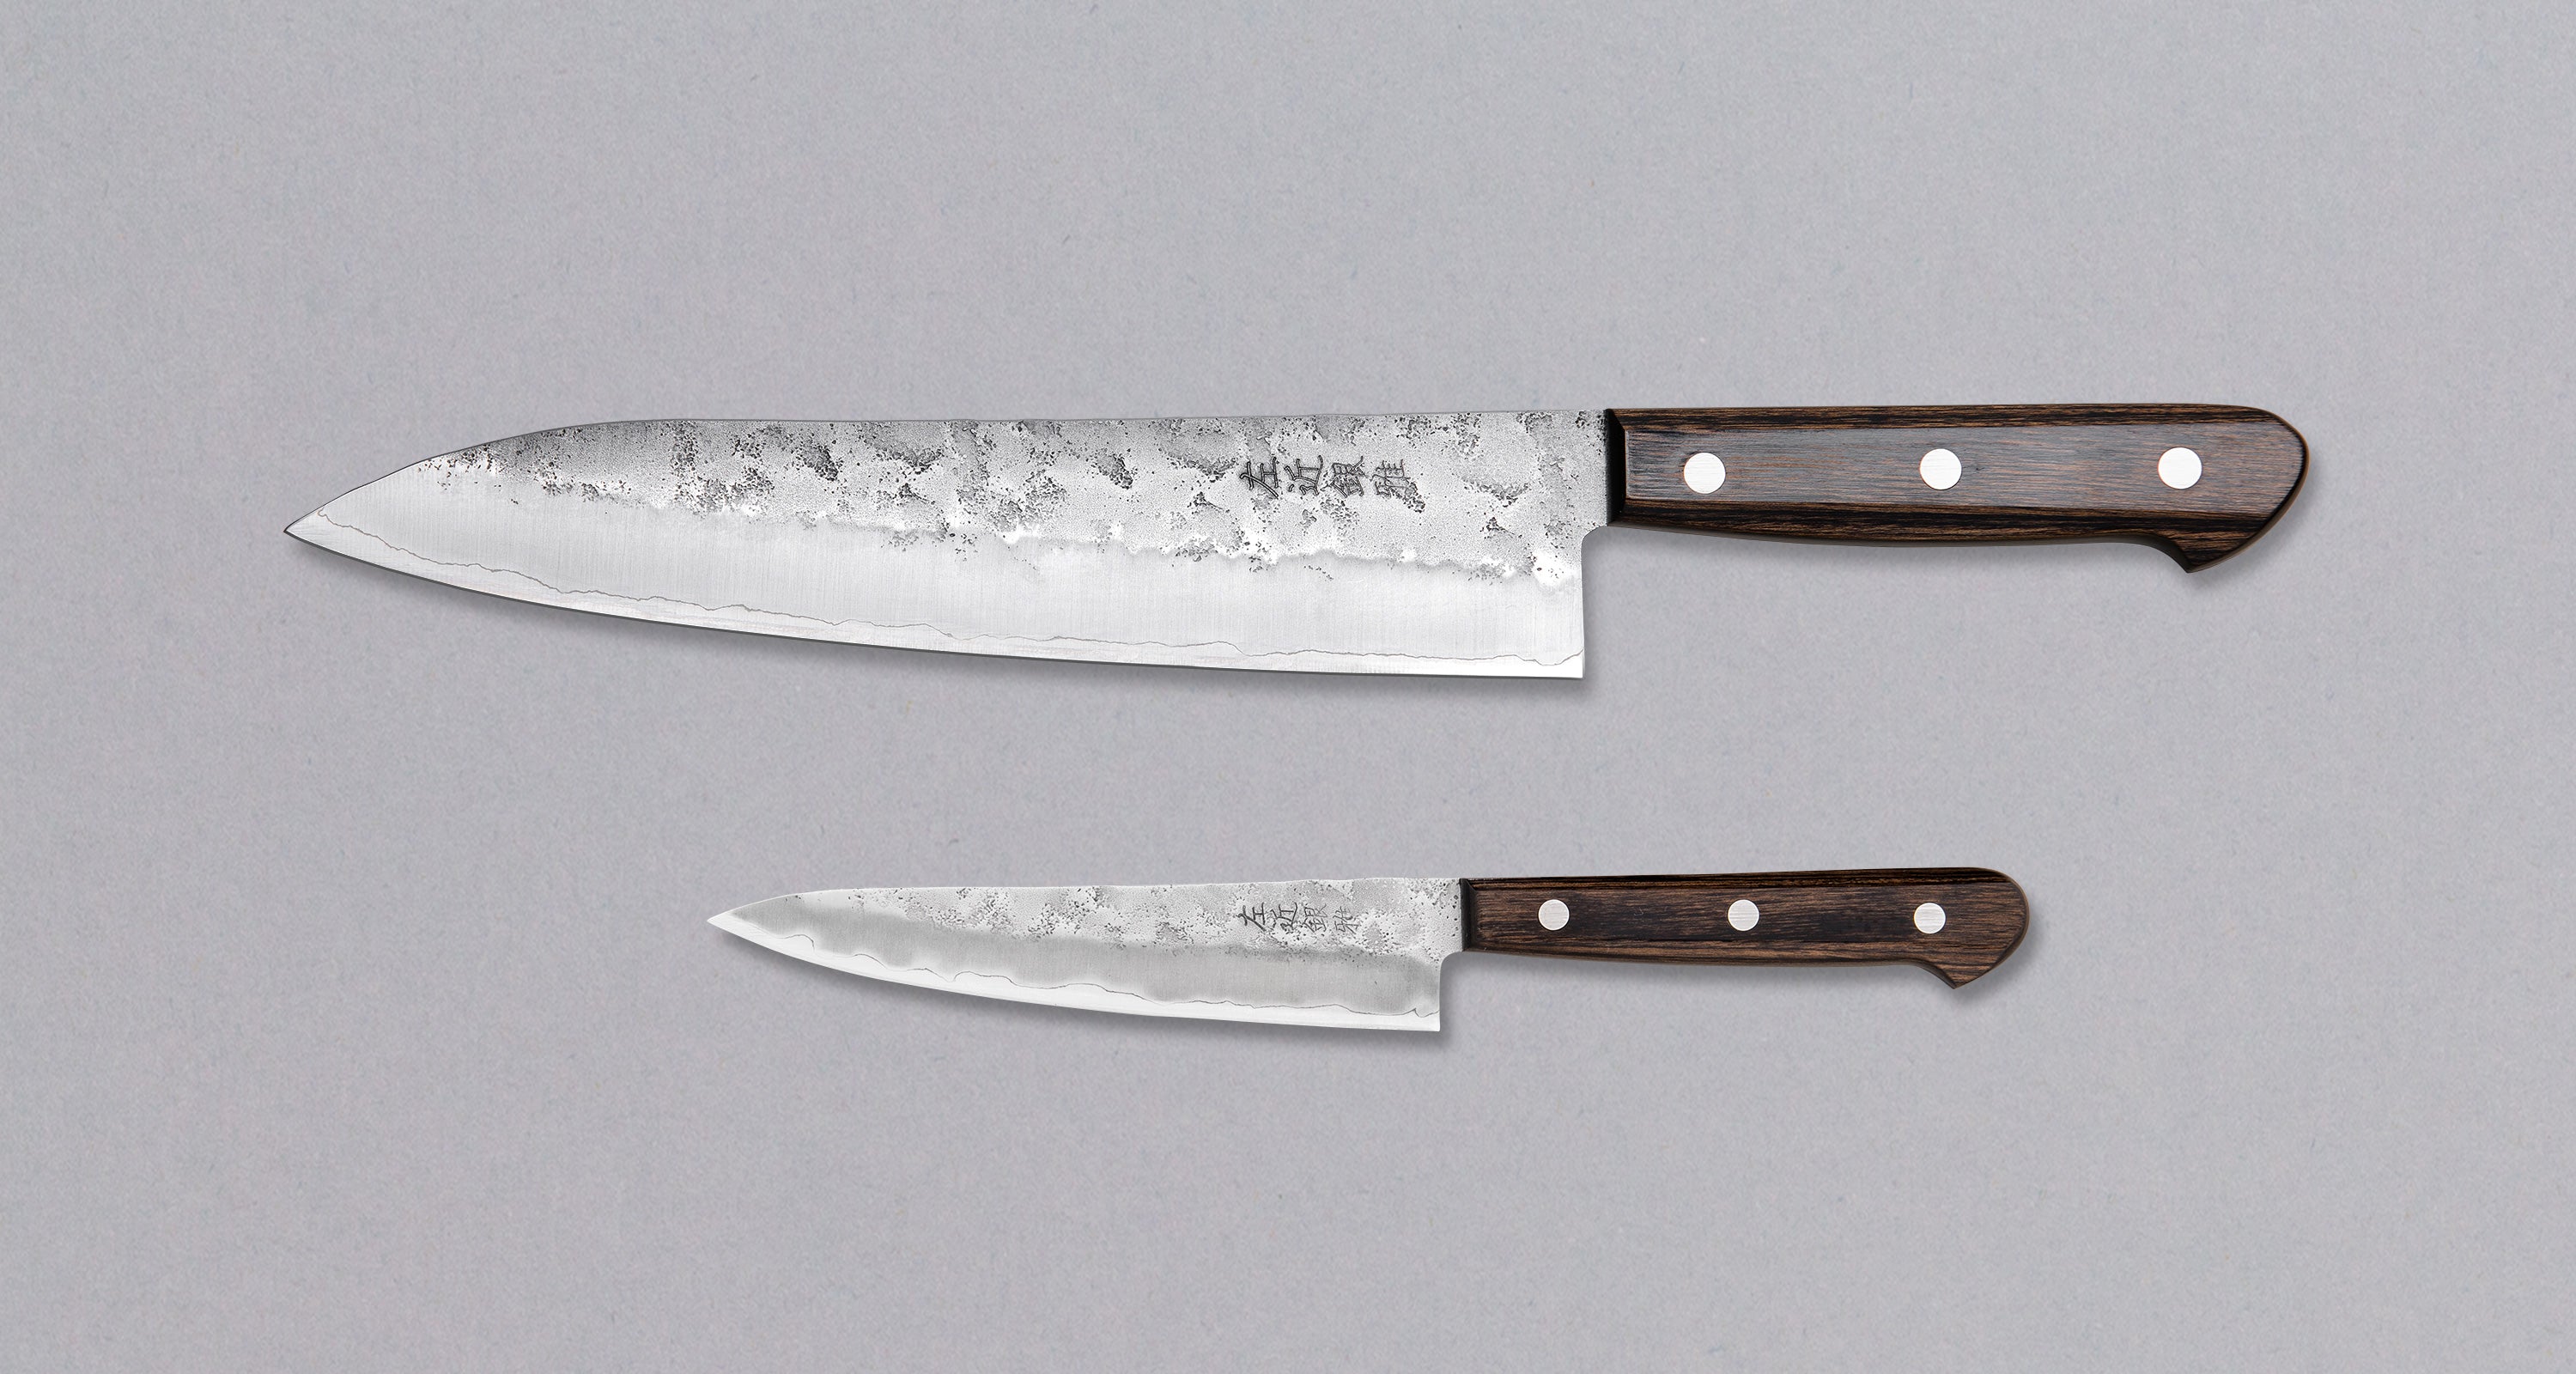 Hanzo - 5 Piece San Mai Kitchen Knife Set